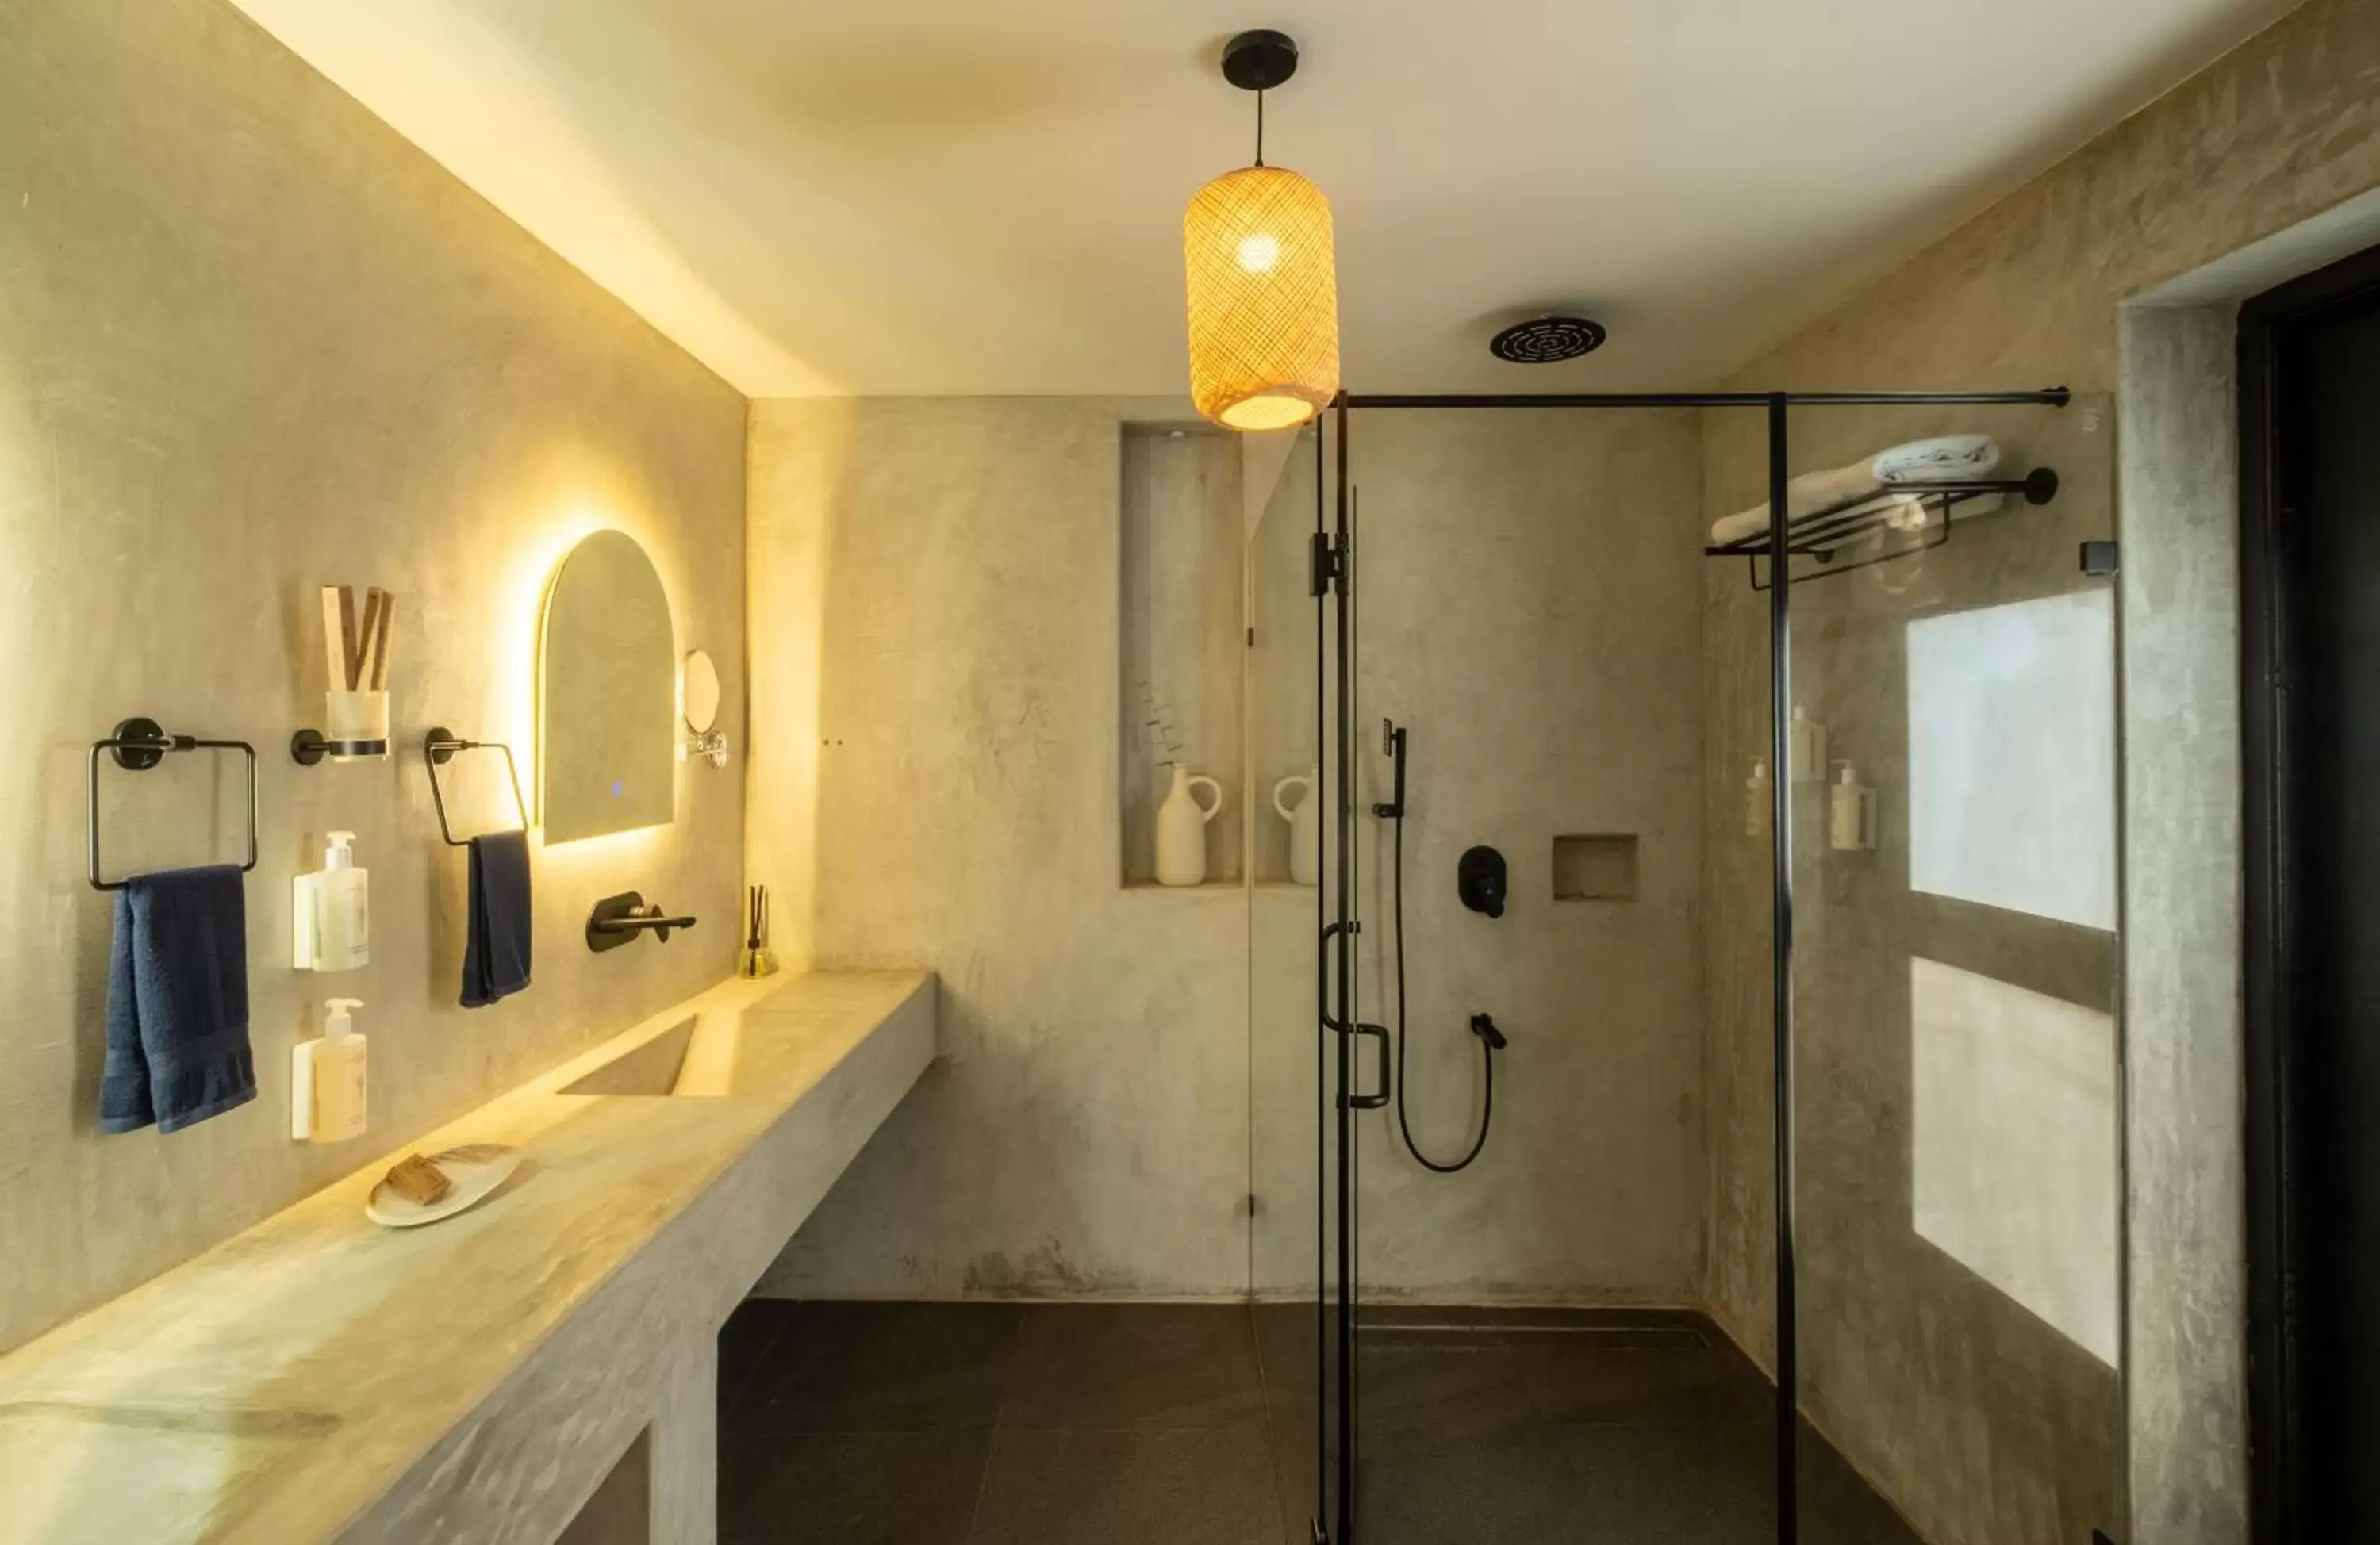 Shower, Bathroom in C Roque Beach Resort